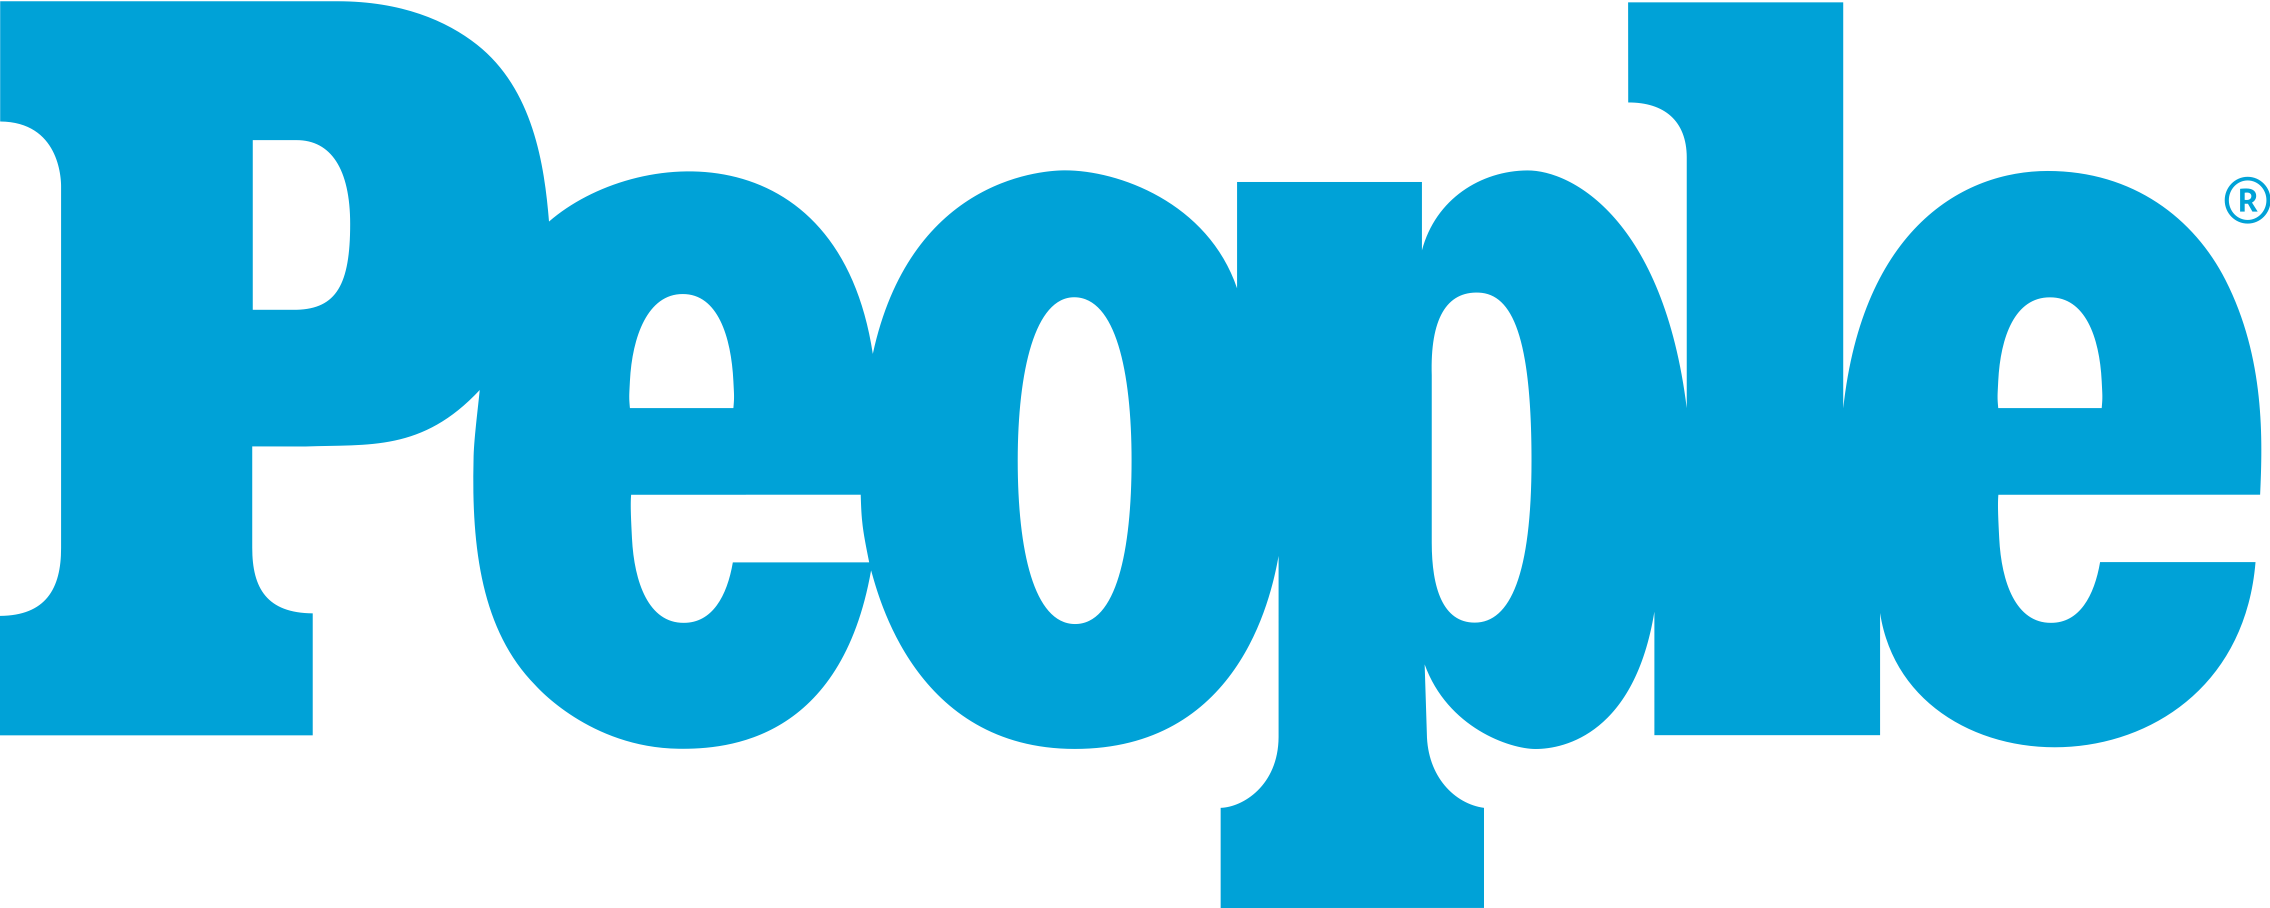 People magazine logo